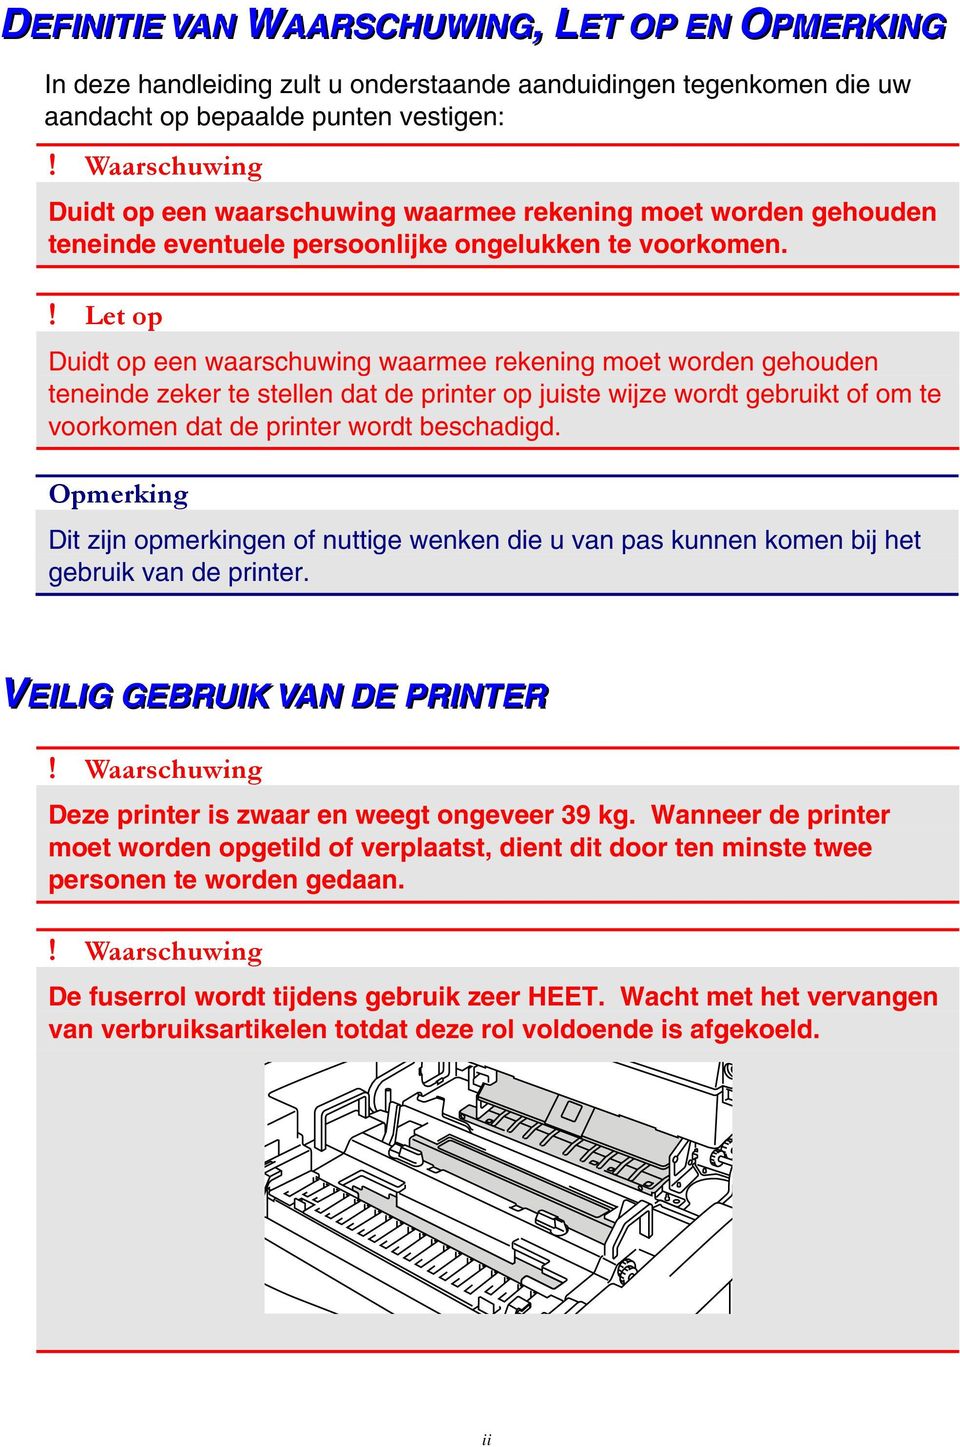 ! Let op Duidt op een waarschuwing waarmee rekening moet worden gehouden teneinde zeker te stellen dat de printer op juiste wijze wordt gebruikt of om te voorkomen dat de printer wordt beschadigd.